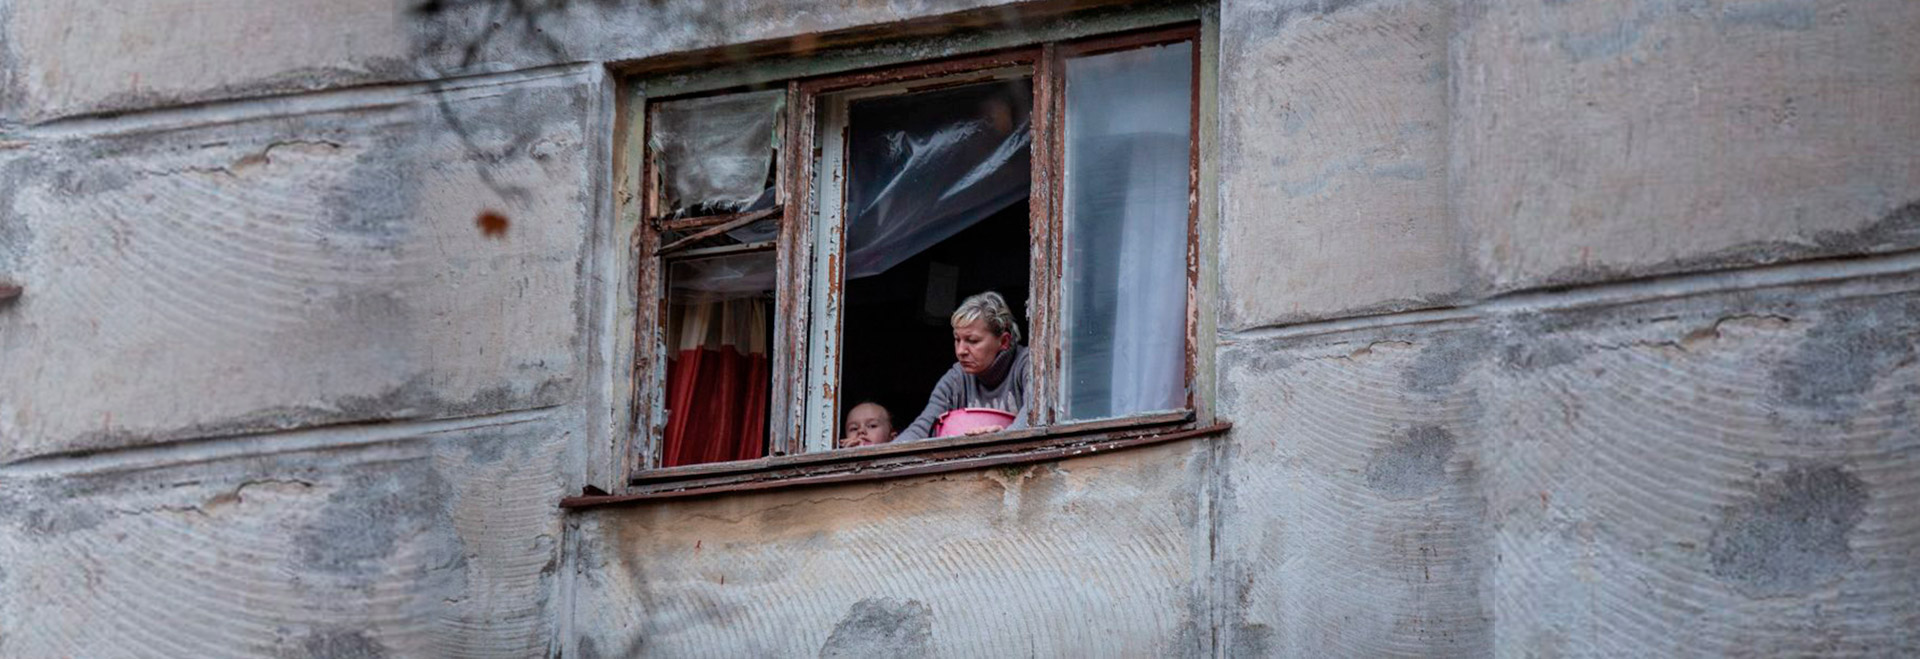 Mãe e filho inspecionam sua janela quebrada depois que o projétil caiu meia hora atrás perto de sua casa, Kherson-novembro 2022 (Foto: Oleksandr Ratushniak / PNUD Ucrânia)